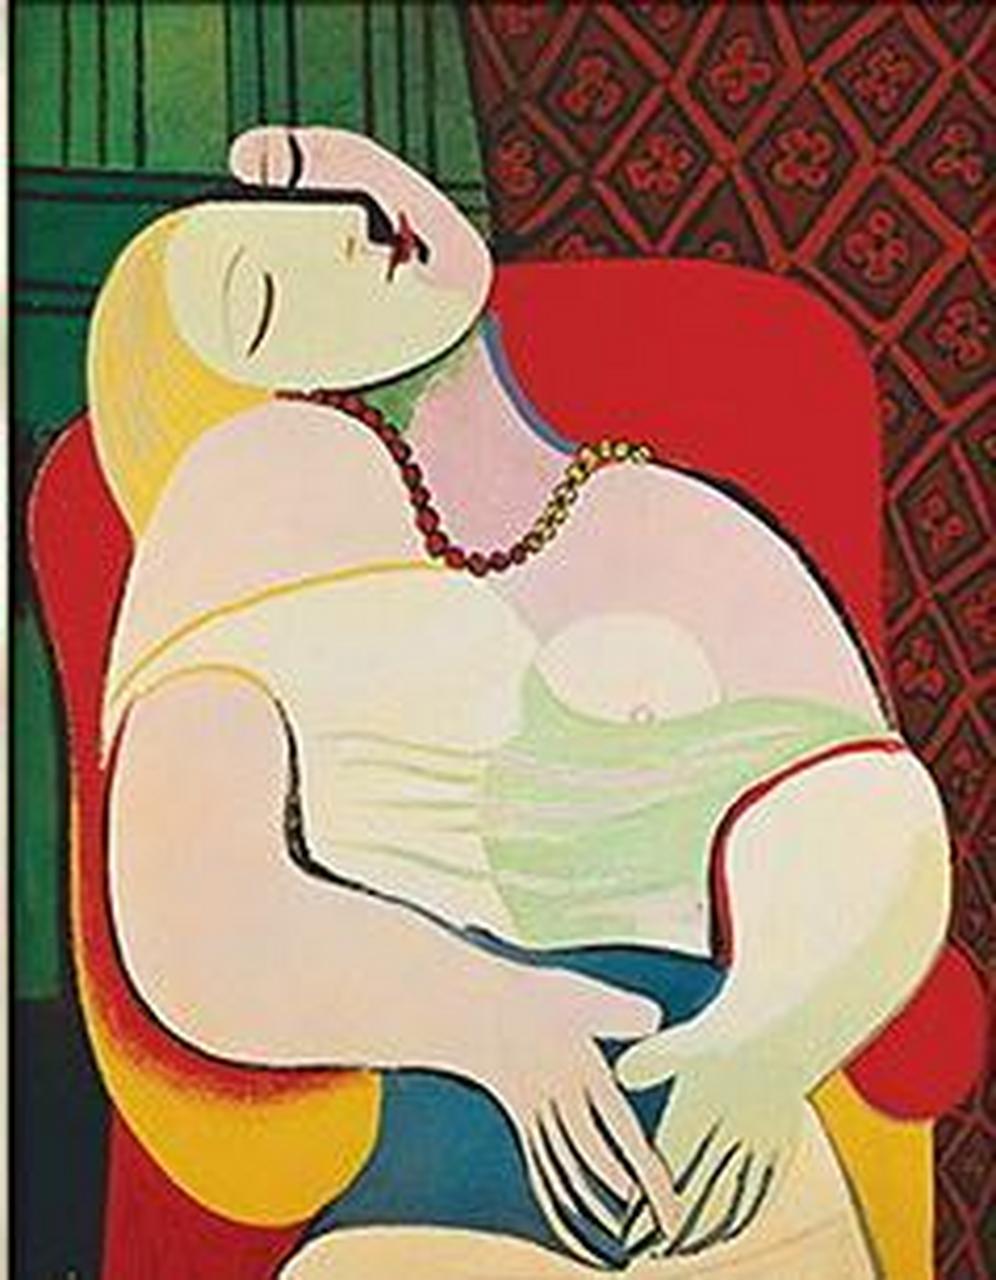 毕加索对爱的完美体现《梦》 1927年,47岁的毕加索与长着一头金发